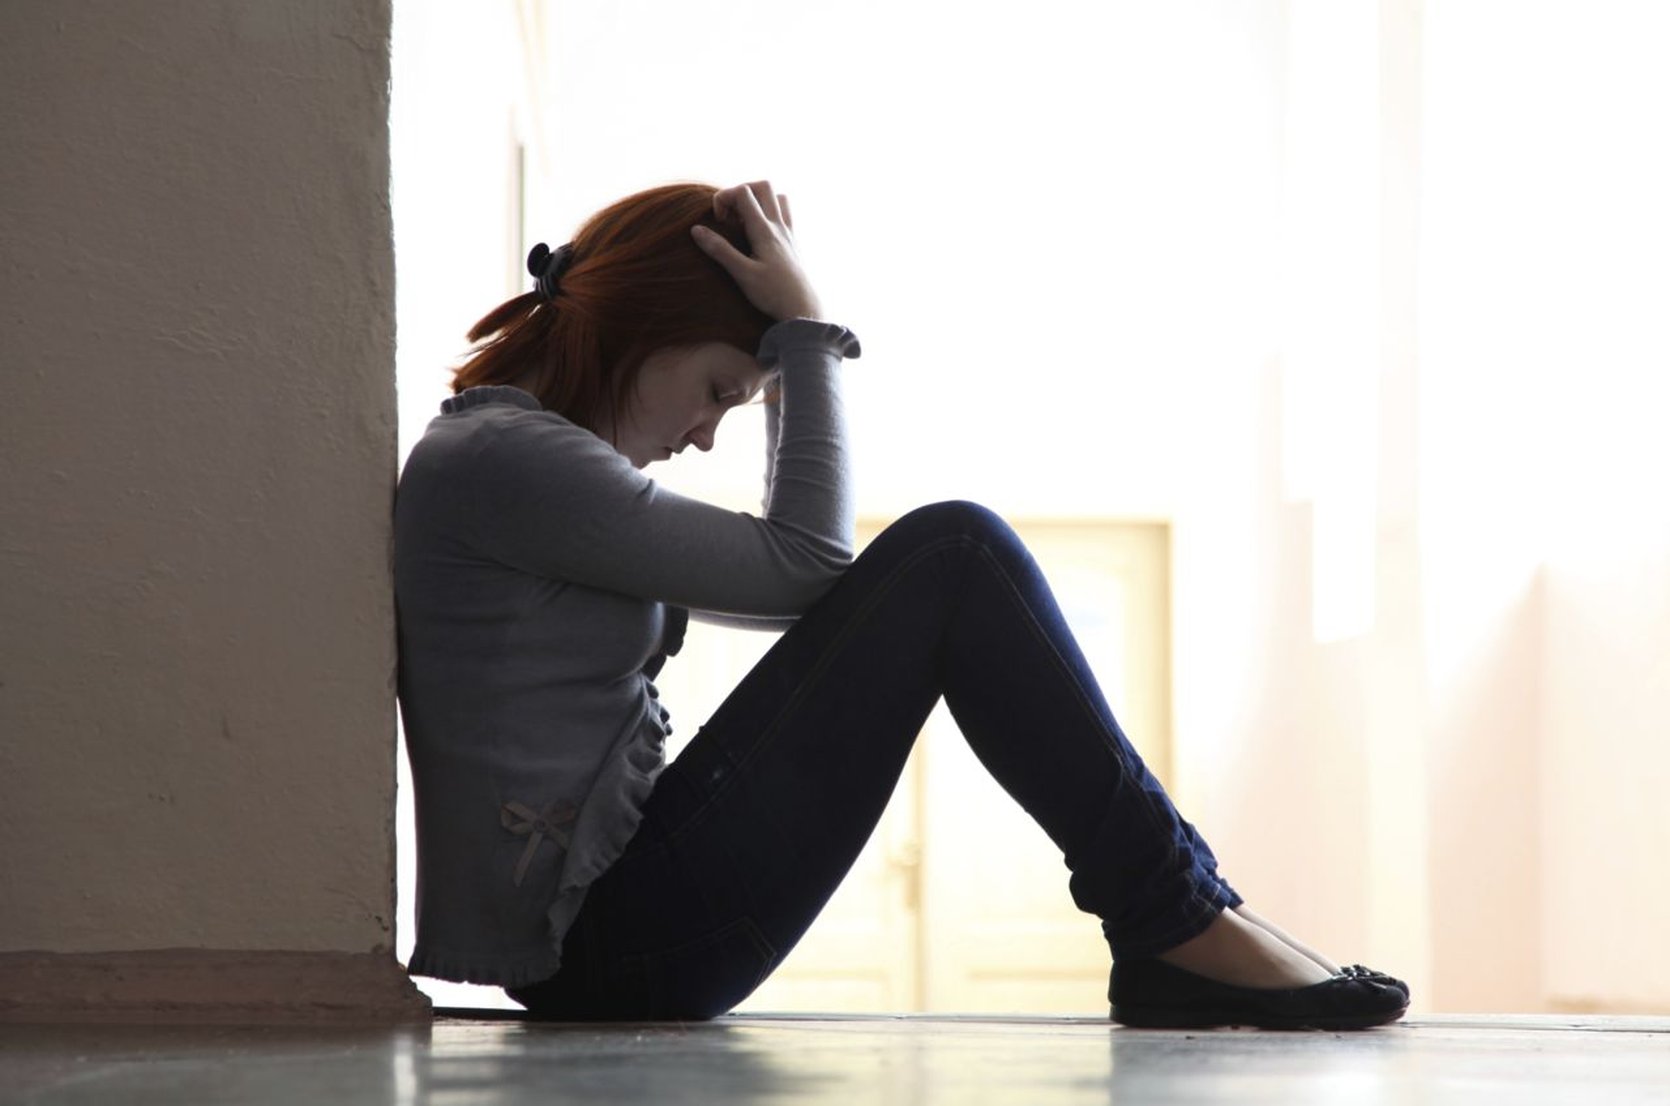 Psychologische interventie vermindert terugval bij bipolaire stoornis